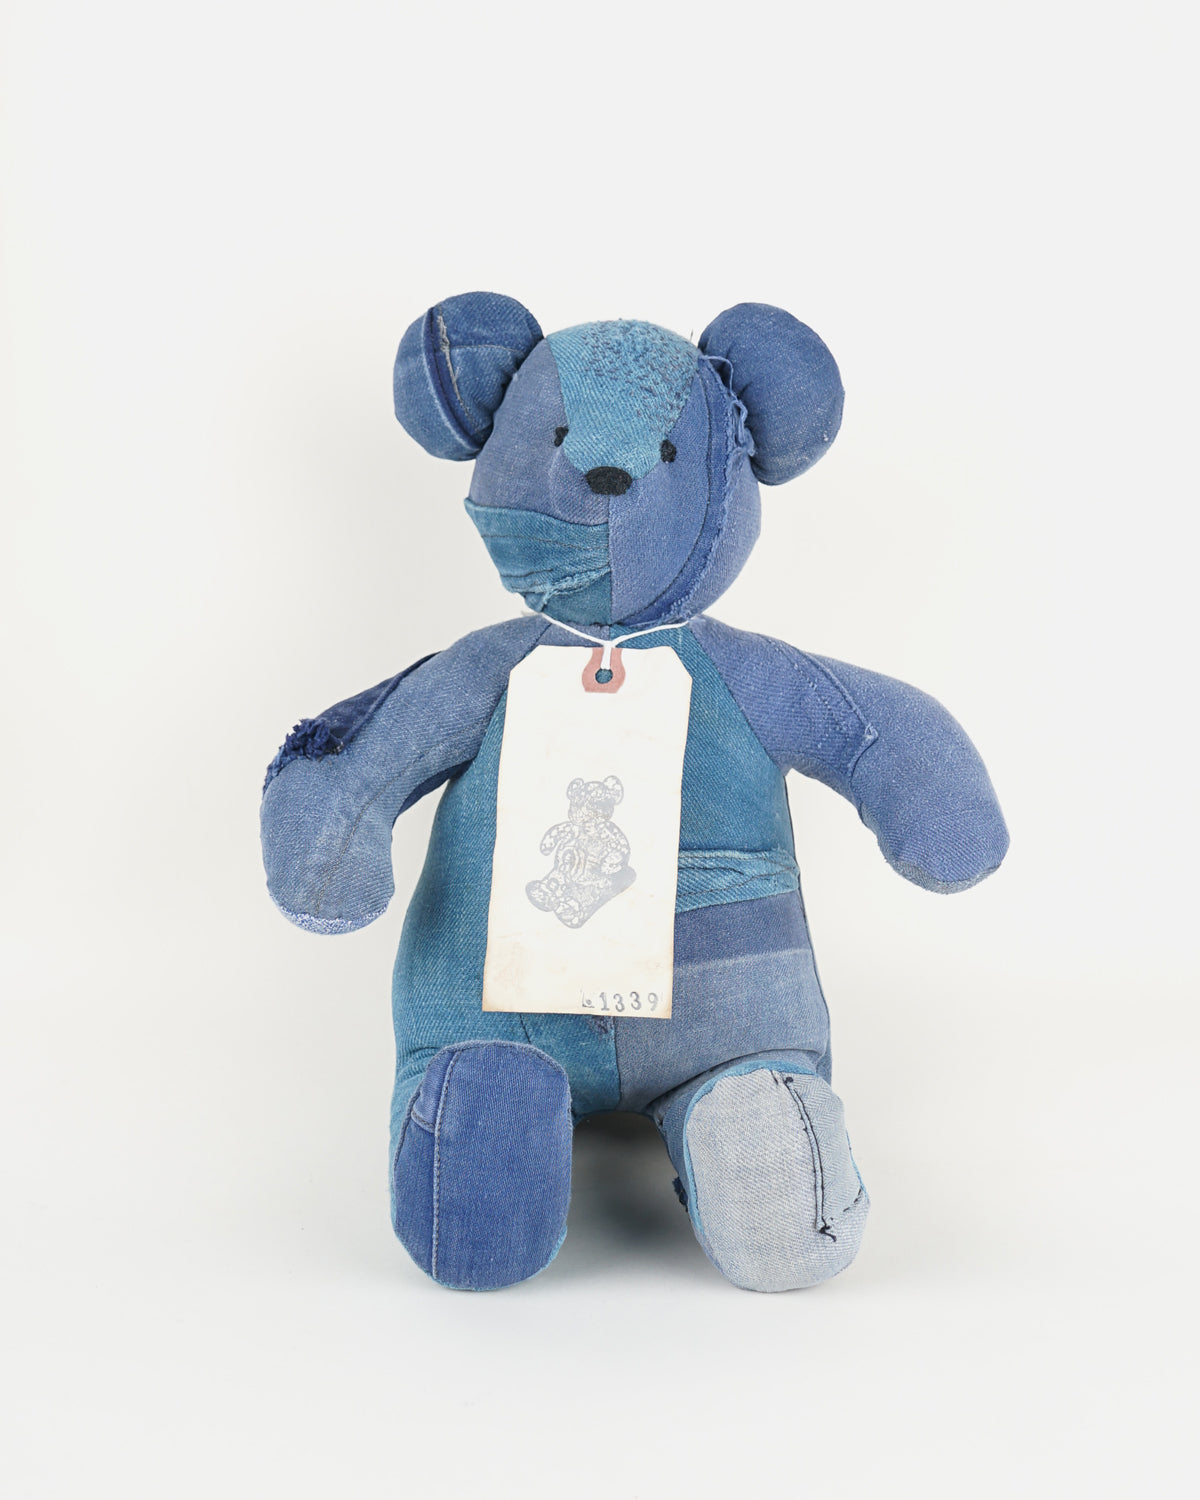 Teddy Bear / 1339